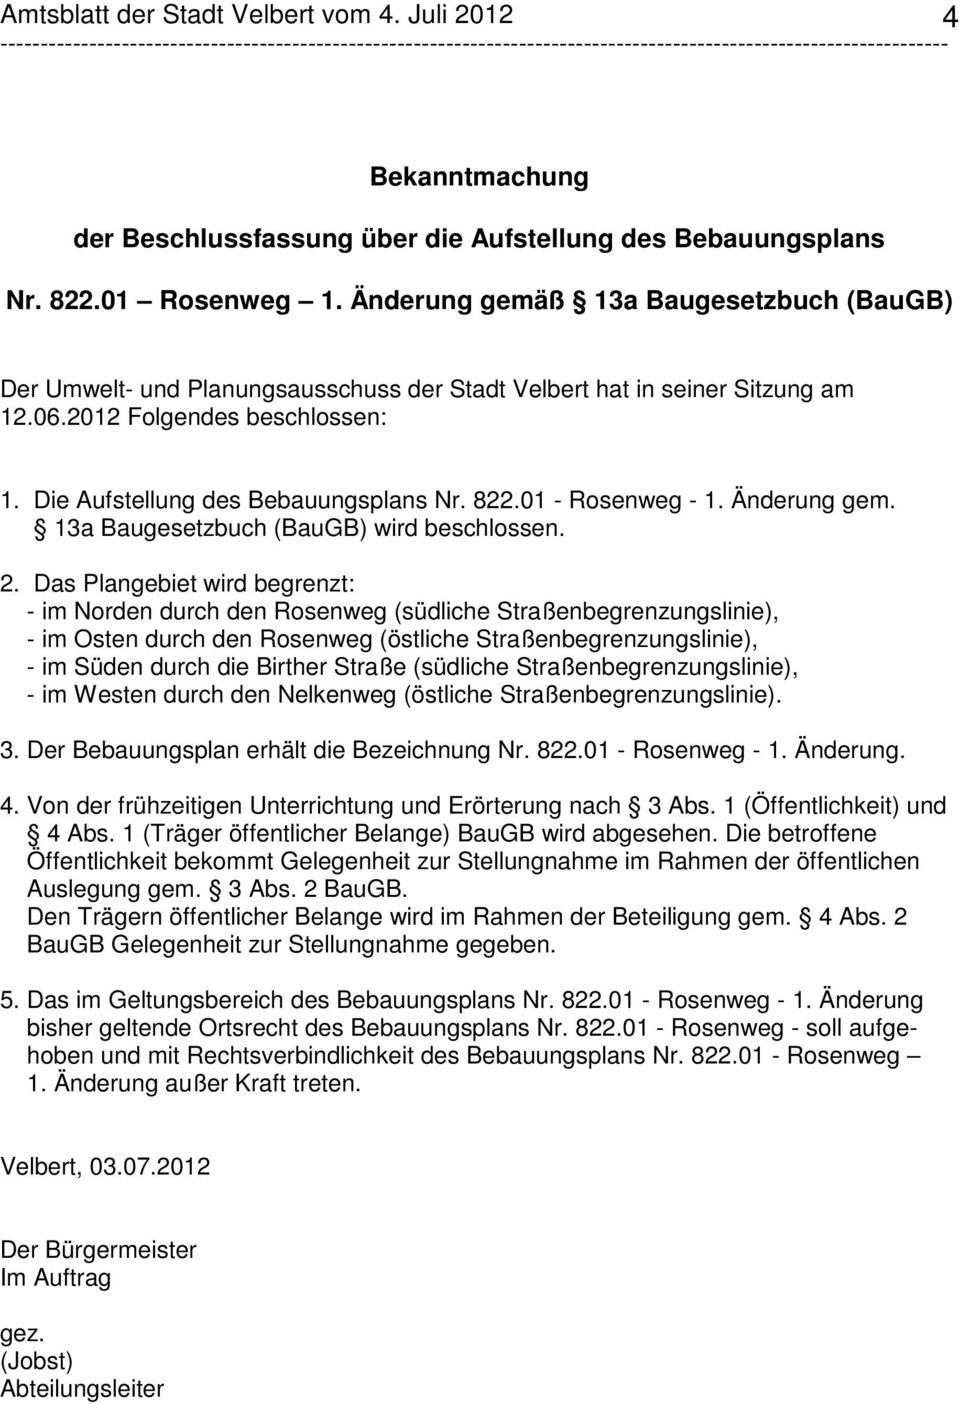 01 - Rosenweg - 1. Änderung gem. 13a Baugesetzbuch (BauGB) wird beschlossen. 2.